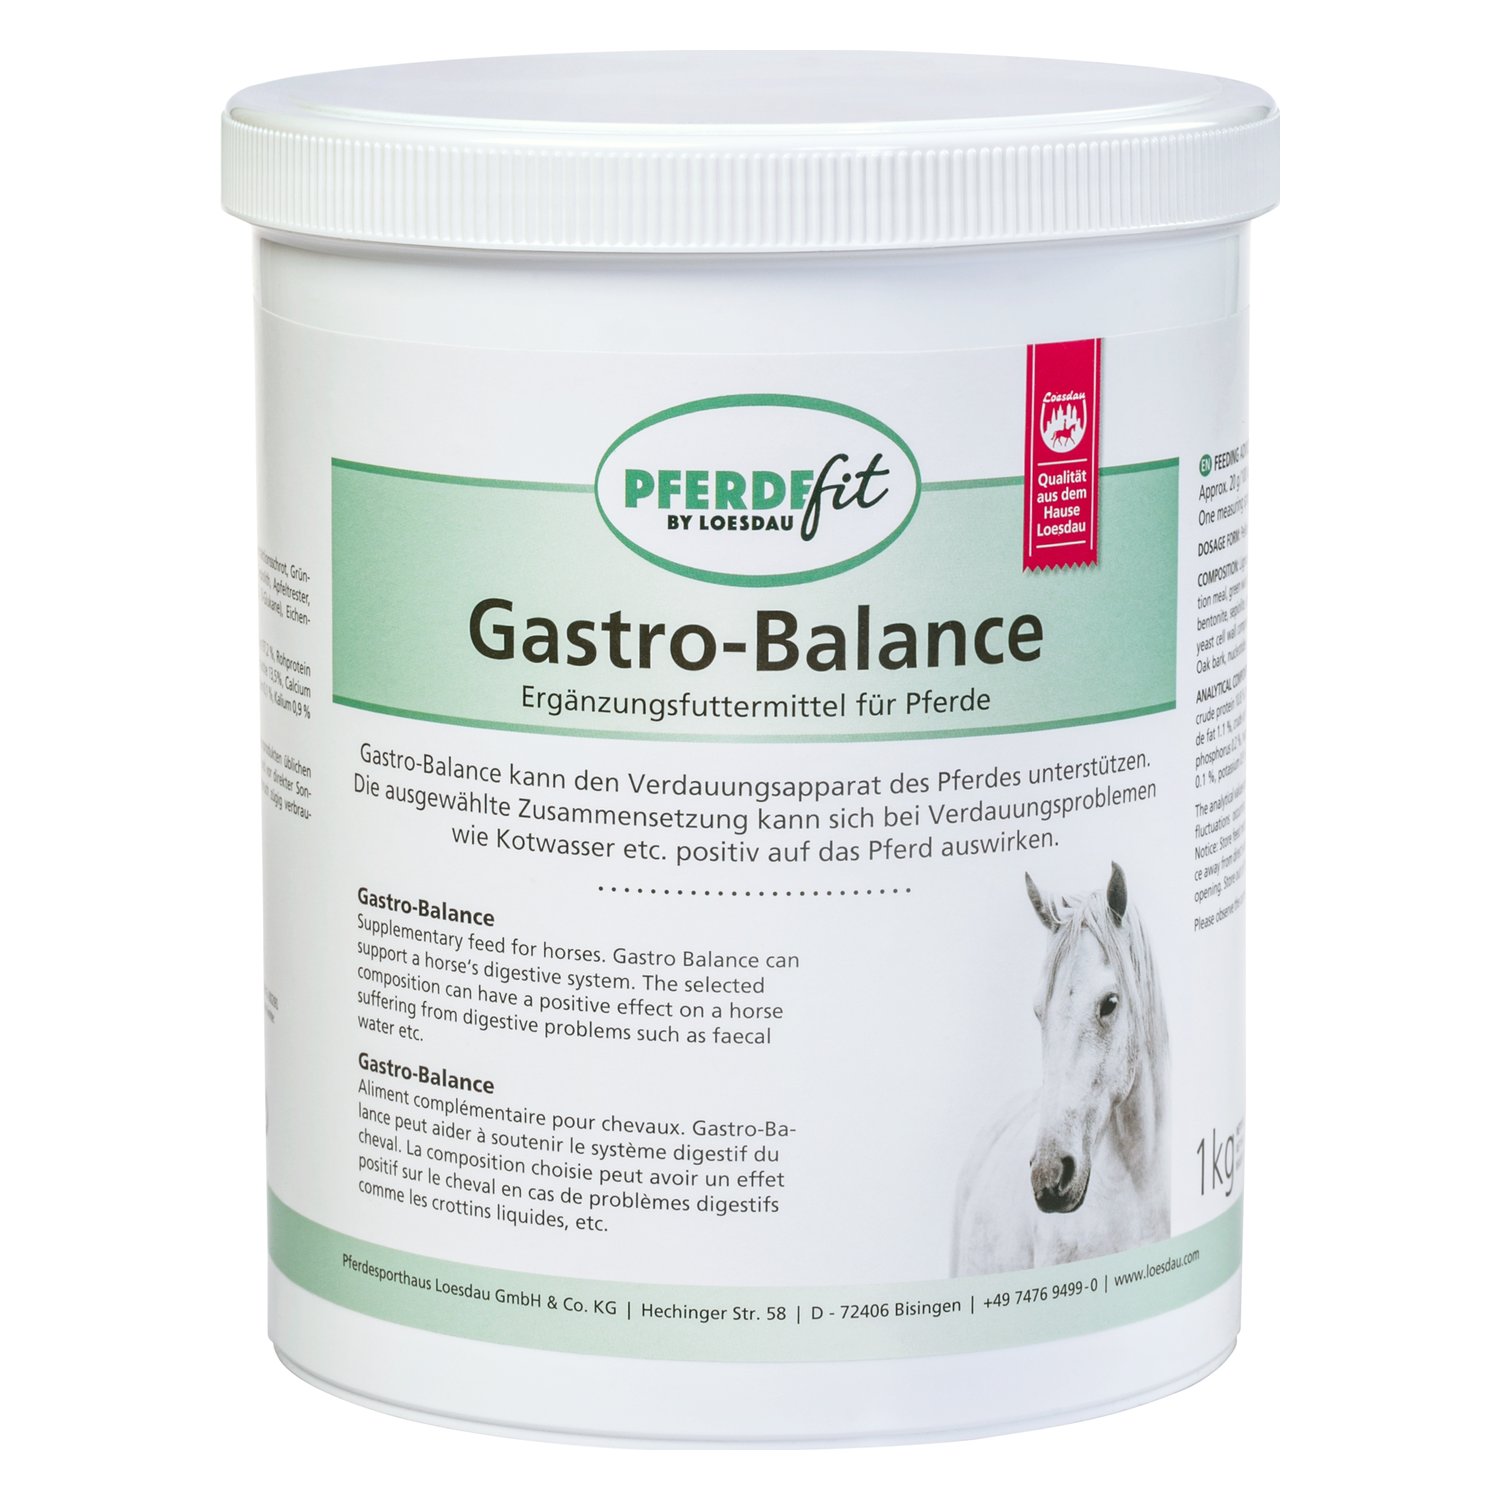 PFERDEfit by Loesdau Gastro-Balance 1 kg